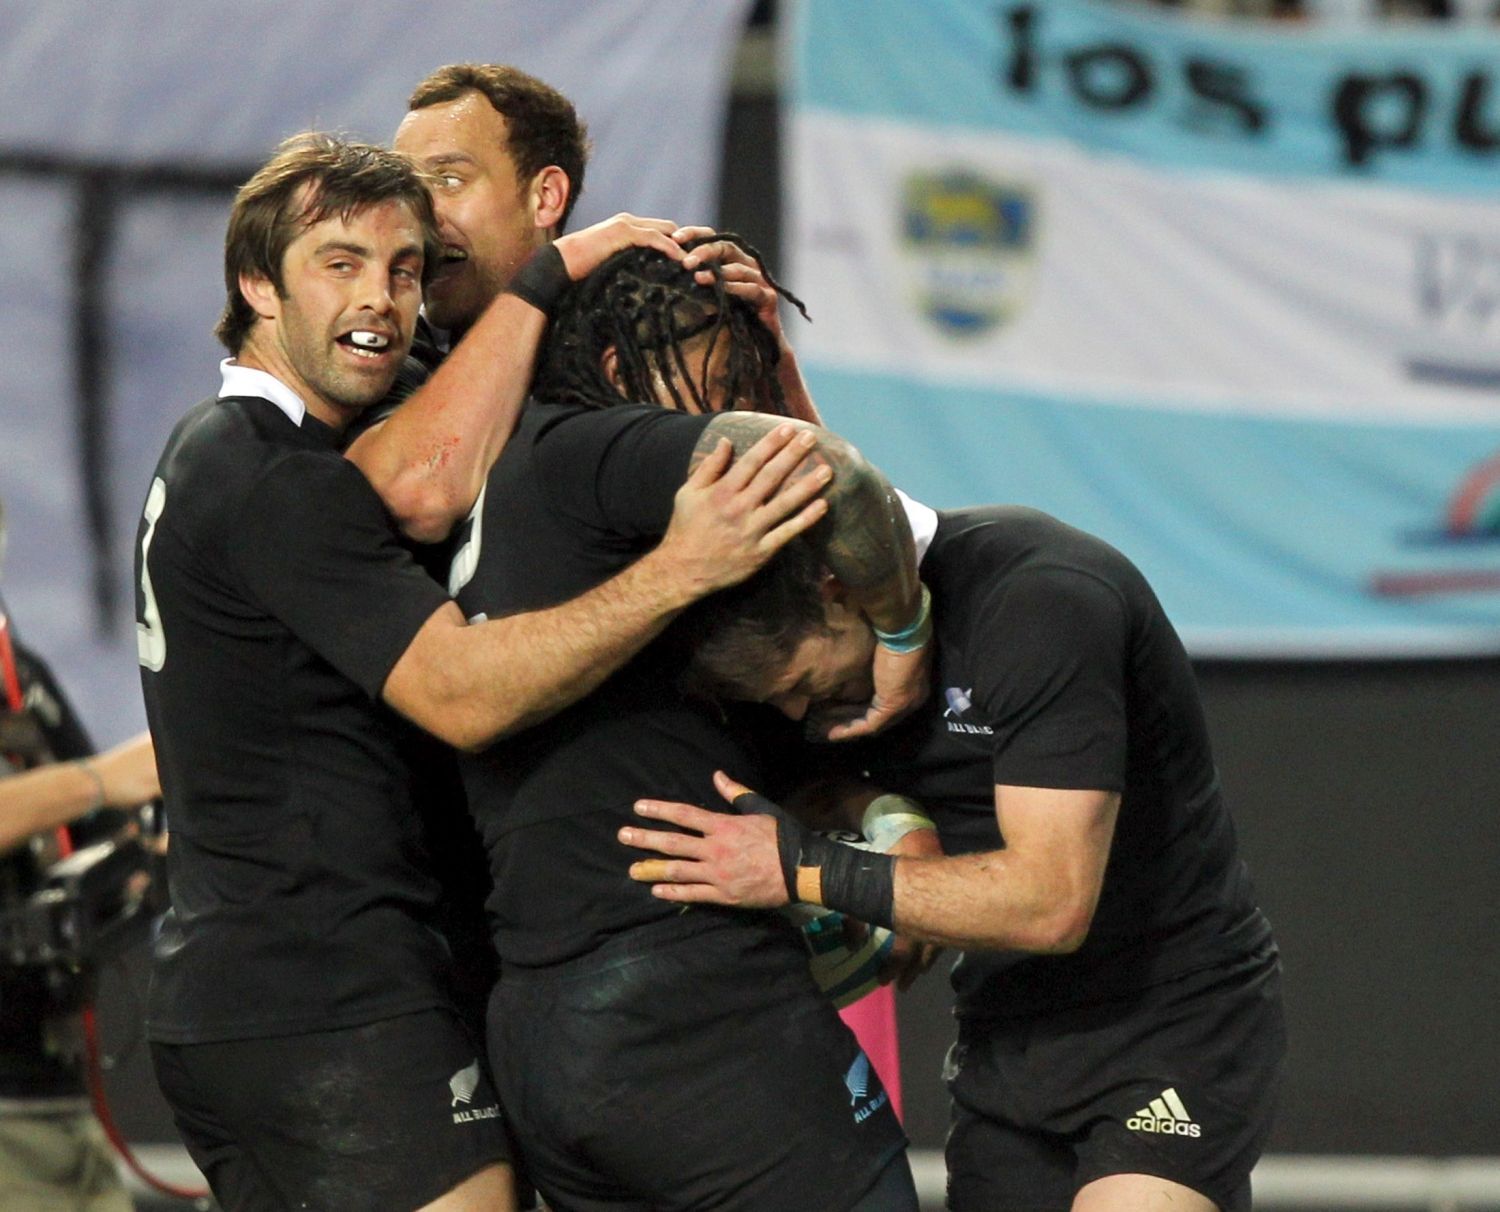 Novozélandští ragbysté "All Blacks" v utkání |Rugby Championship 2012 s Argentinou.